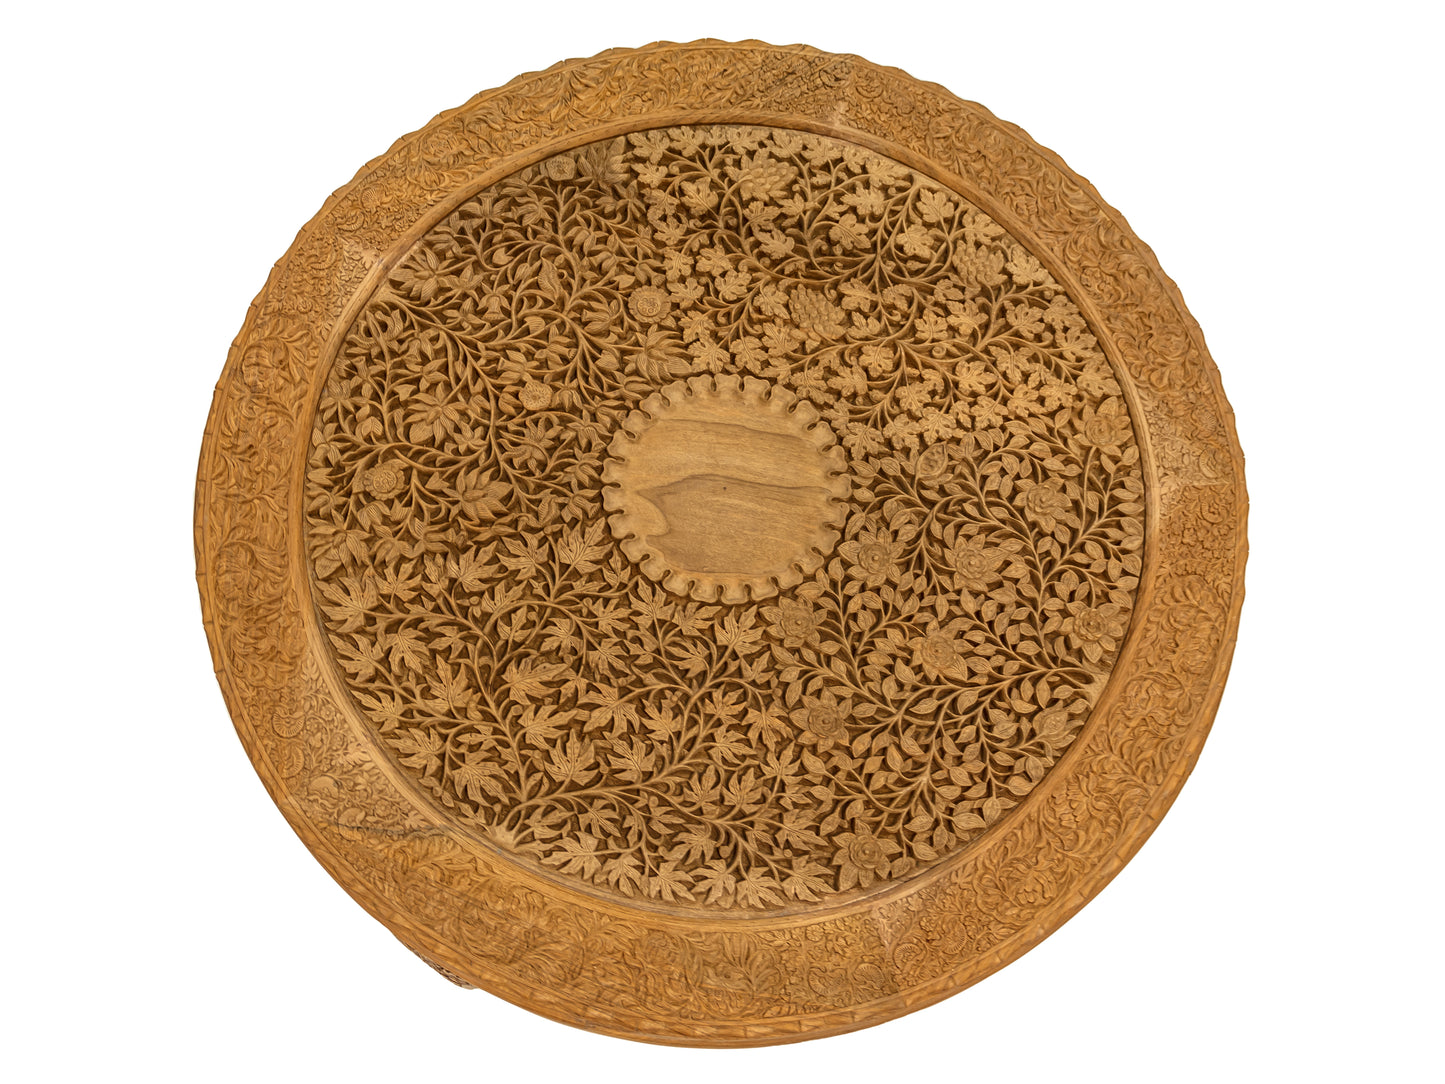 Handmade Walnut Table "4 seasons" product image #29720065081514